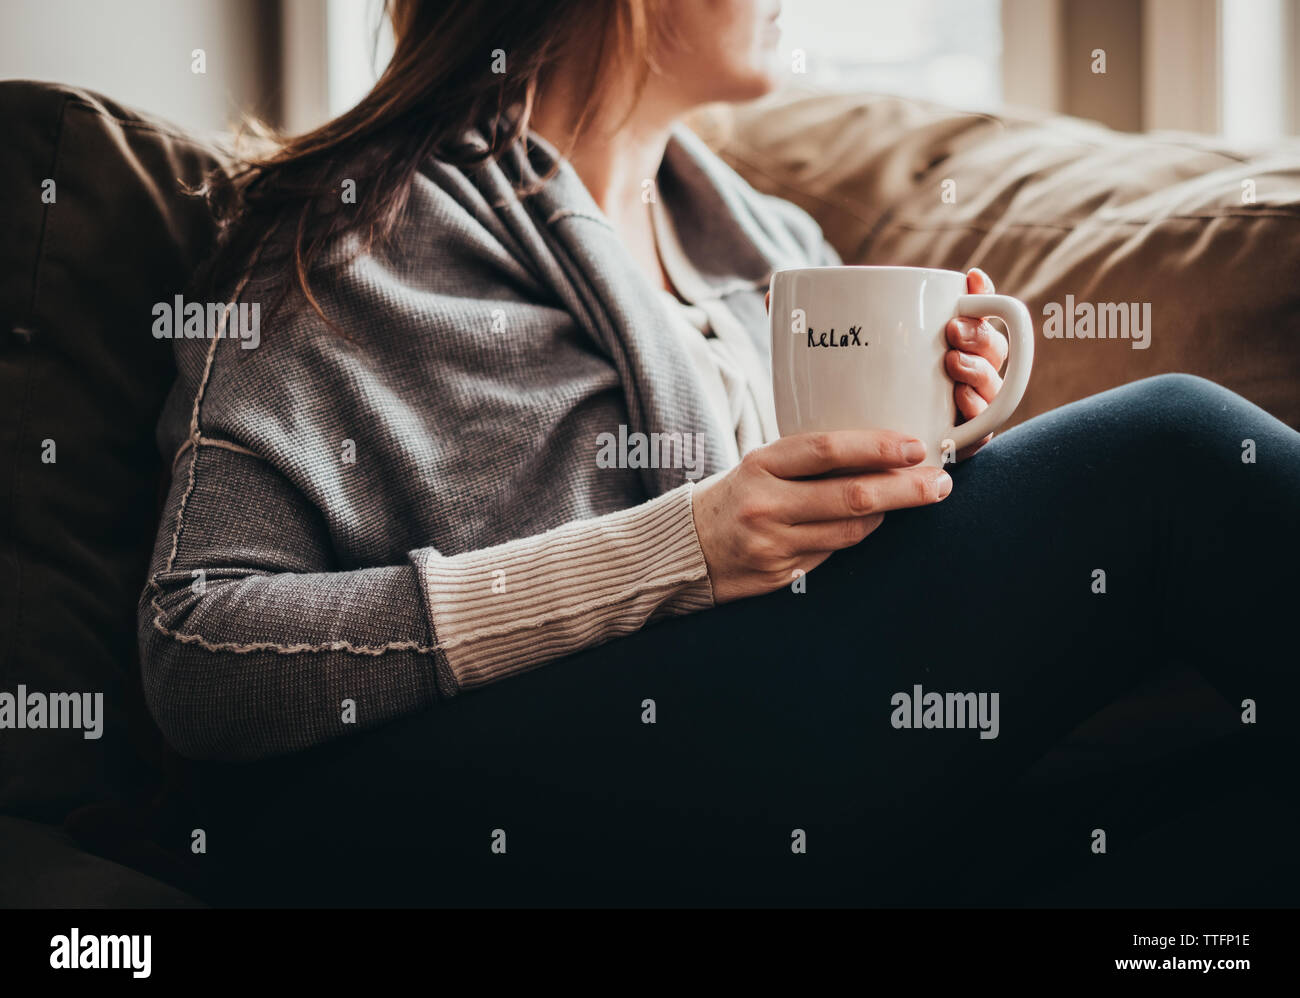 Zugeschnittenes Bild der Frau mit Becher mit Wort auf es auf der Couch entspannen. Stockfoto